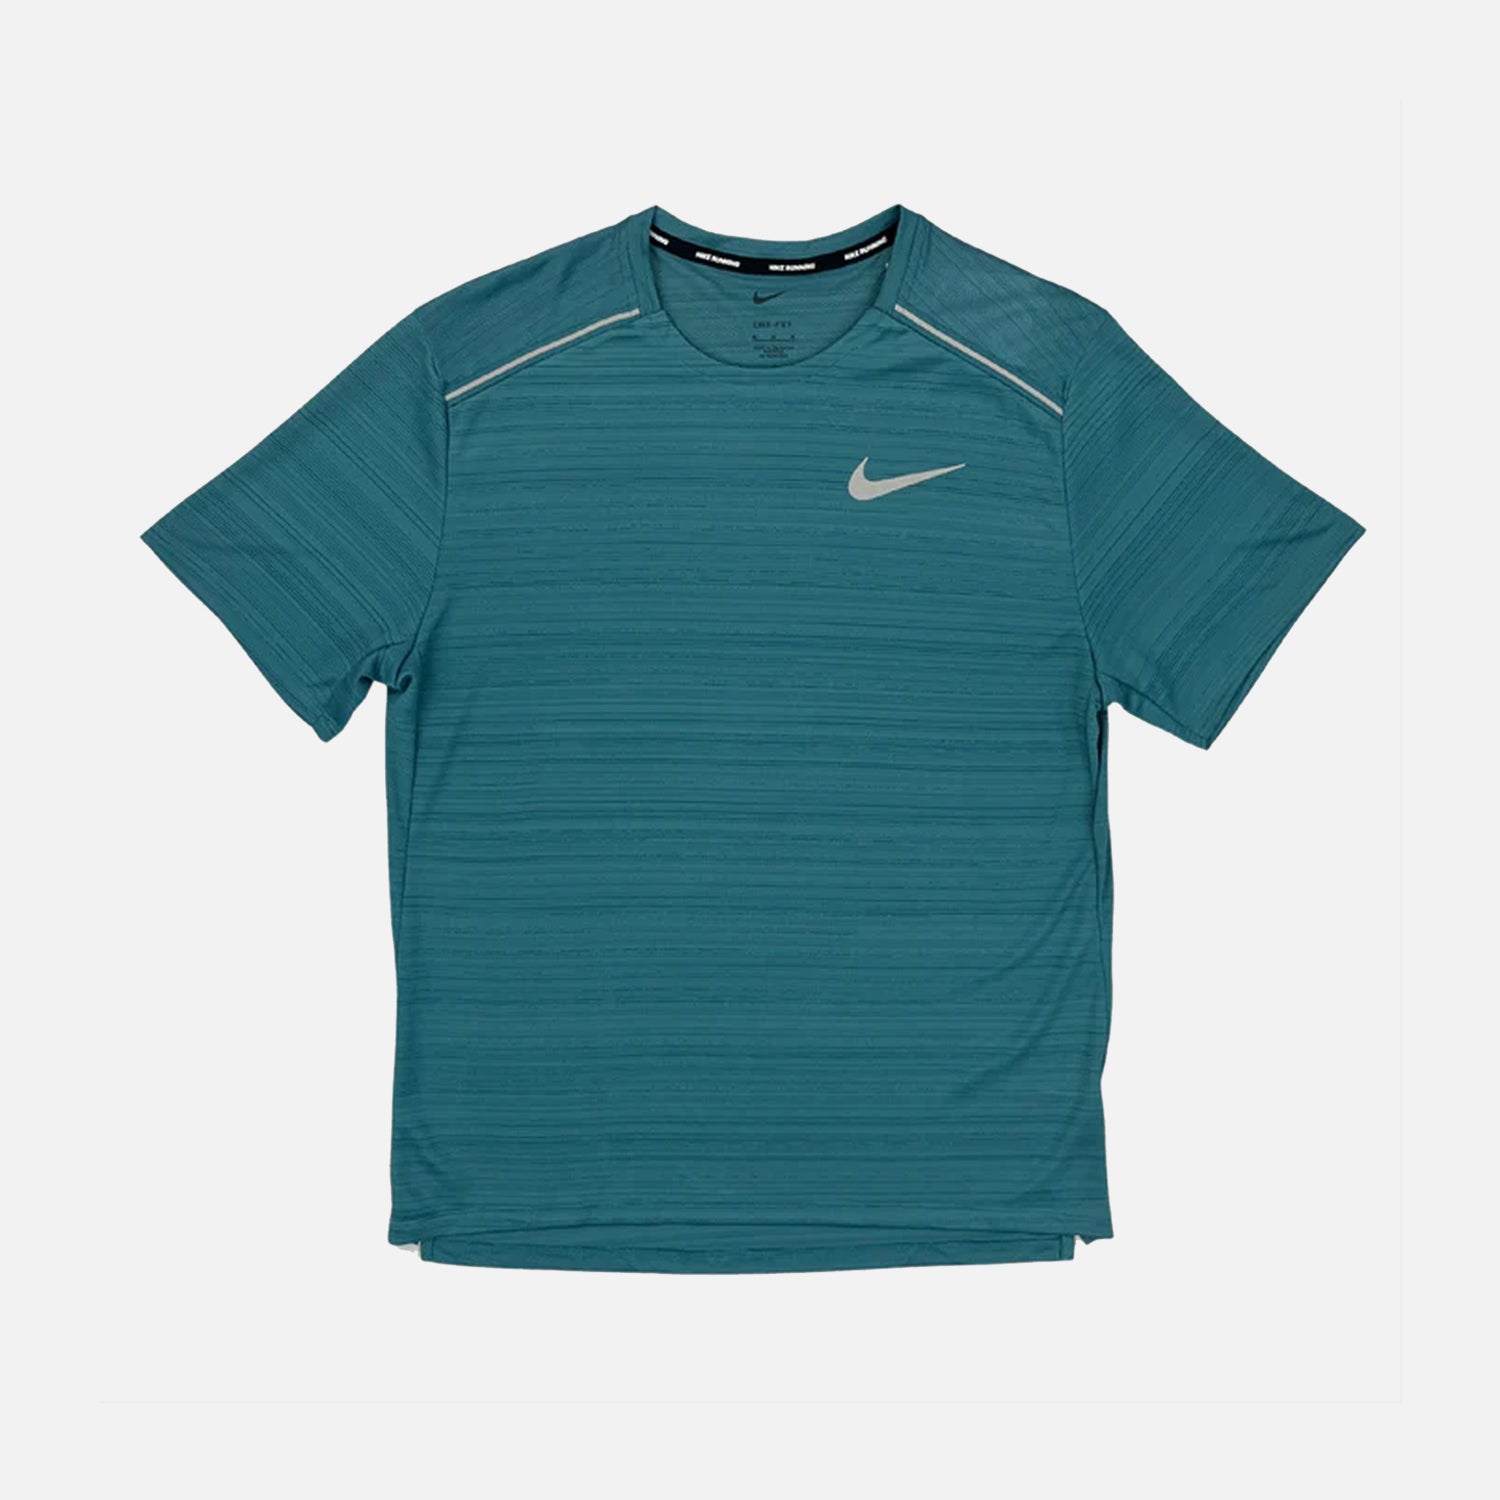 Nike Dri-Fit Miler 1.0 T-Shirt - Teal